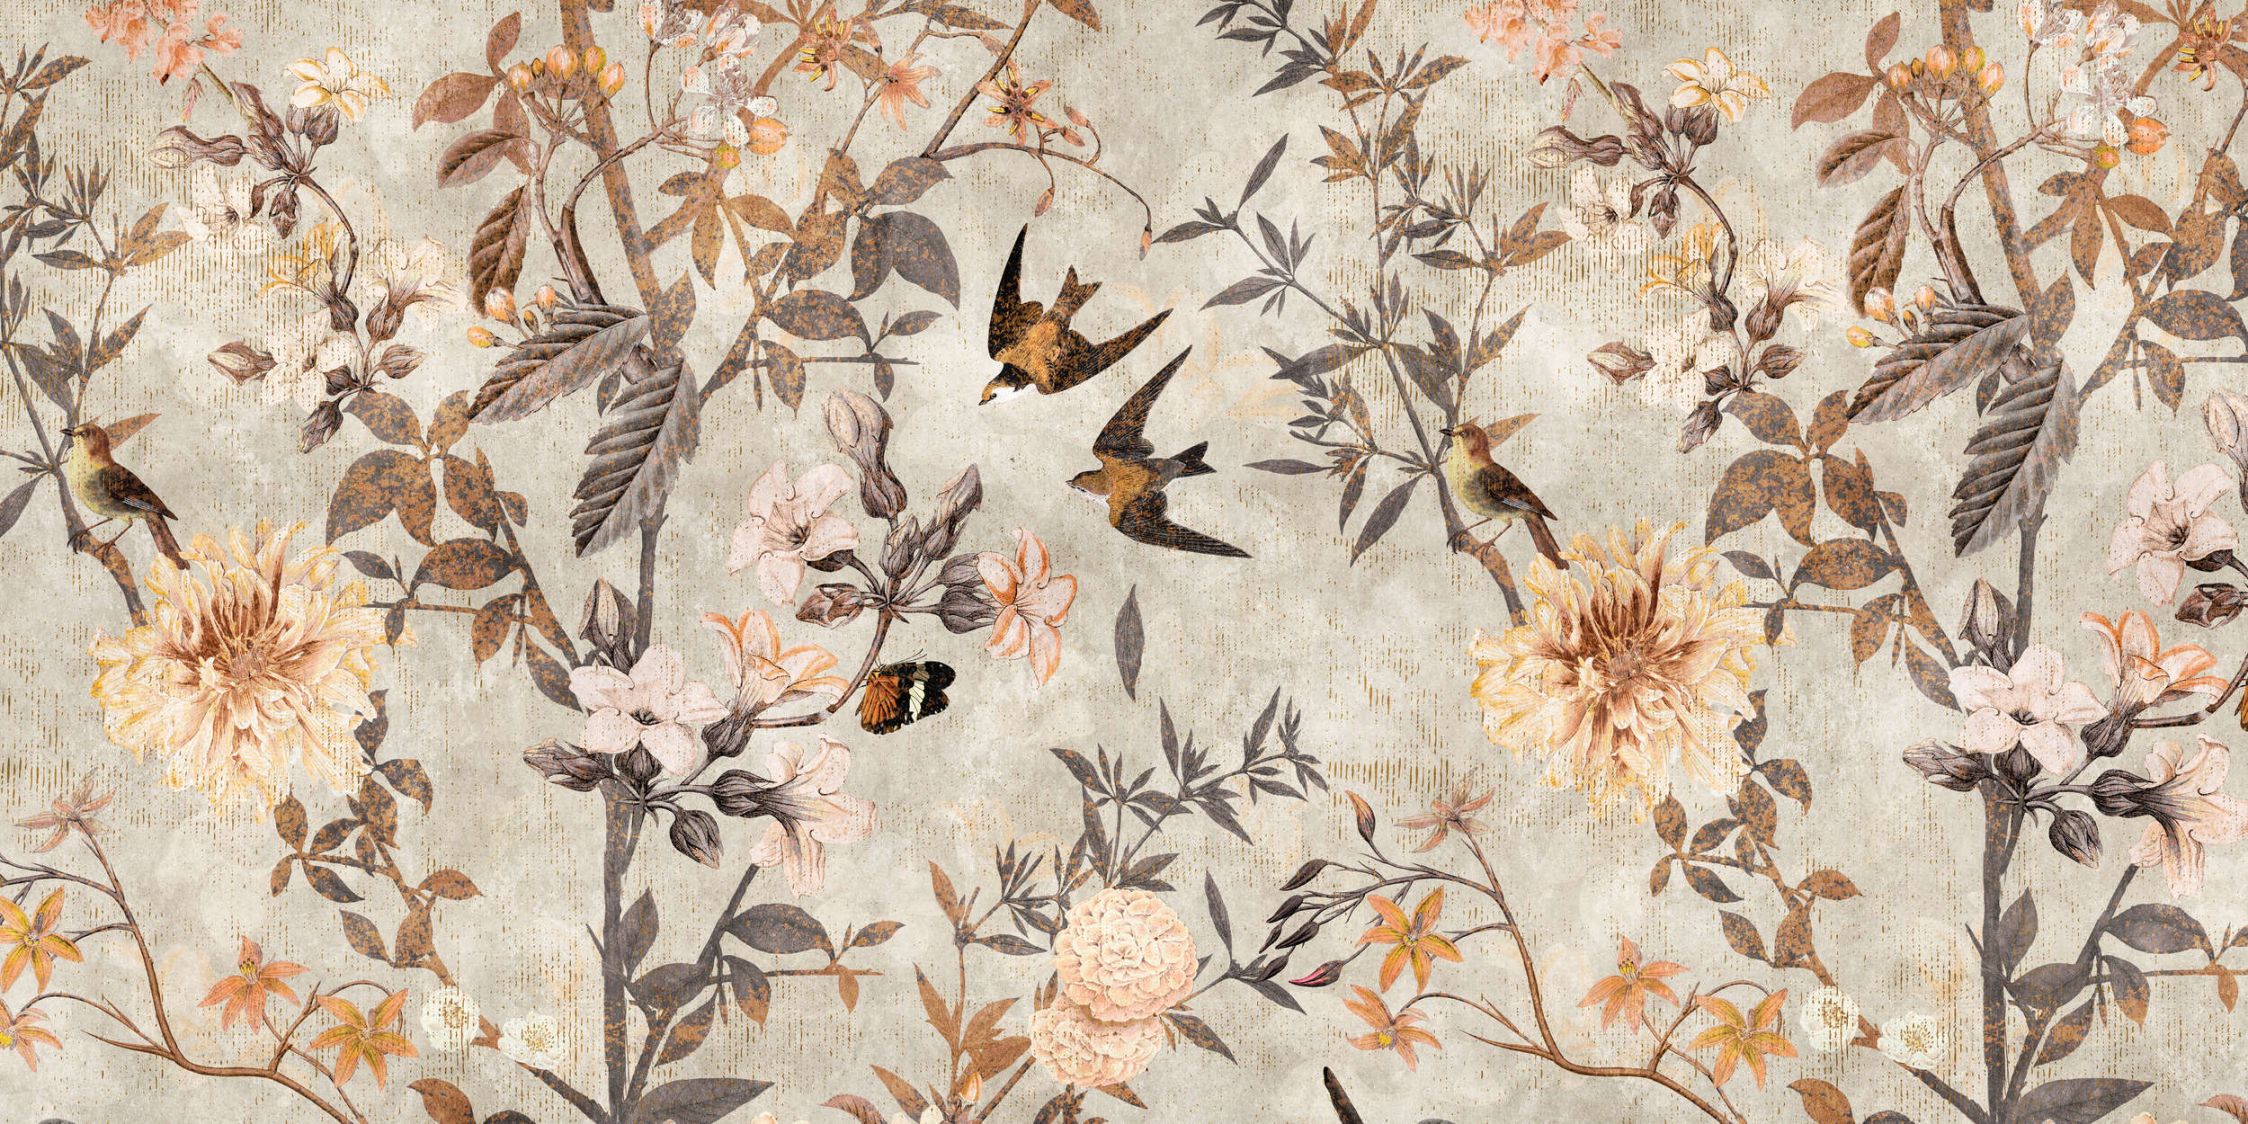             papier peint en papier panoramique »eden« - oiseaux & fleurs style vintage - intissé lisse, légèrement nacré
        